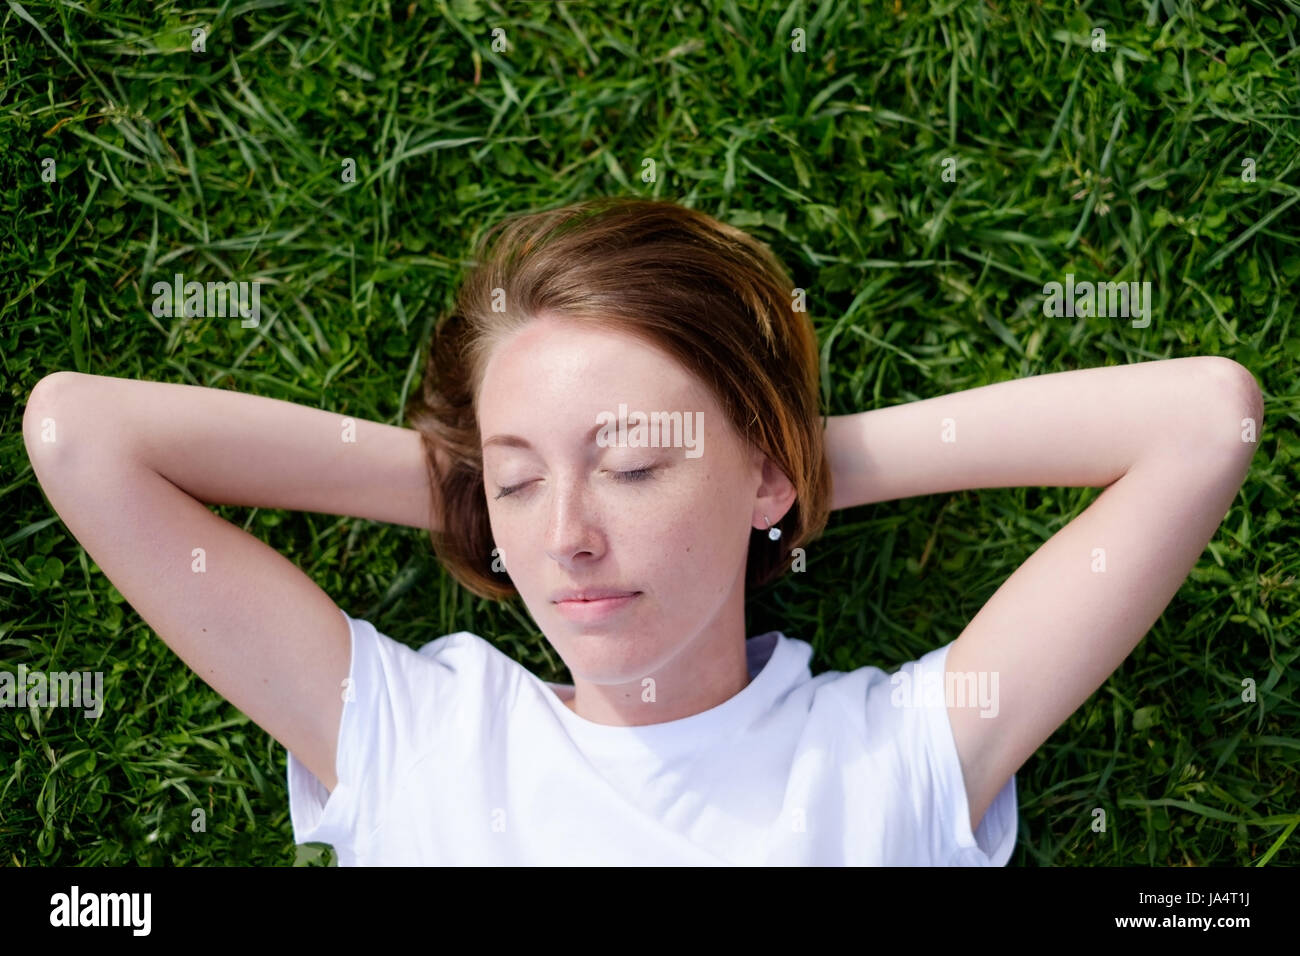 Una bellissima ragazza con le lentiggini giace sull'erba verde con gli occhi chiusi e poggia Foto Stock